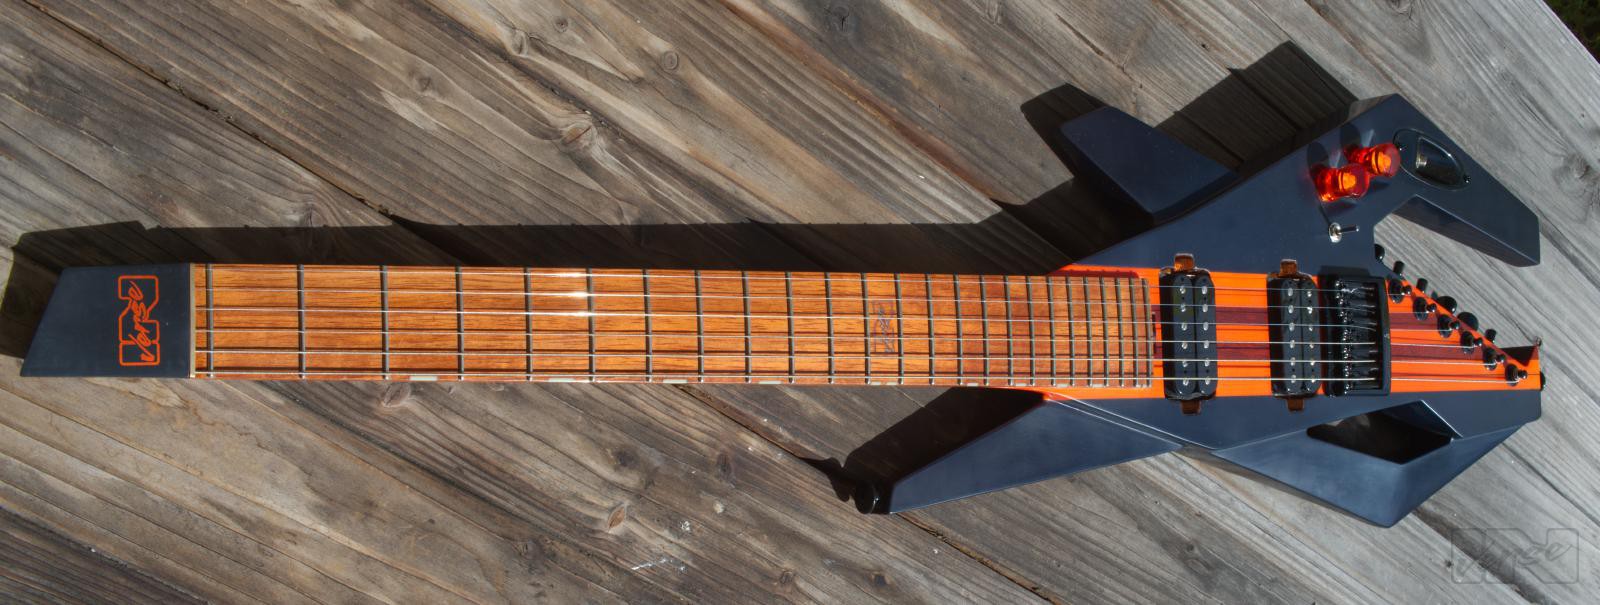 Piranha guitar